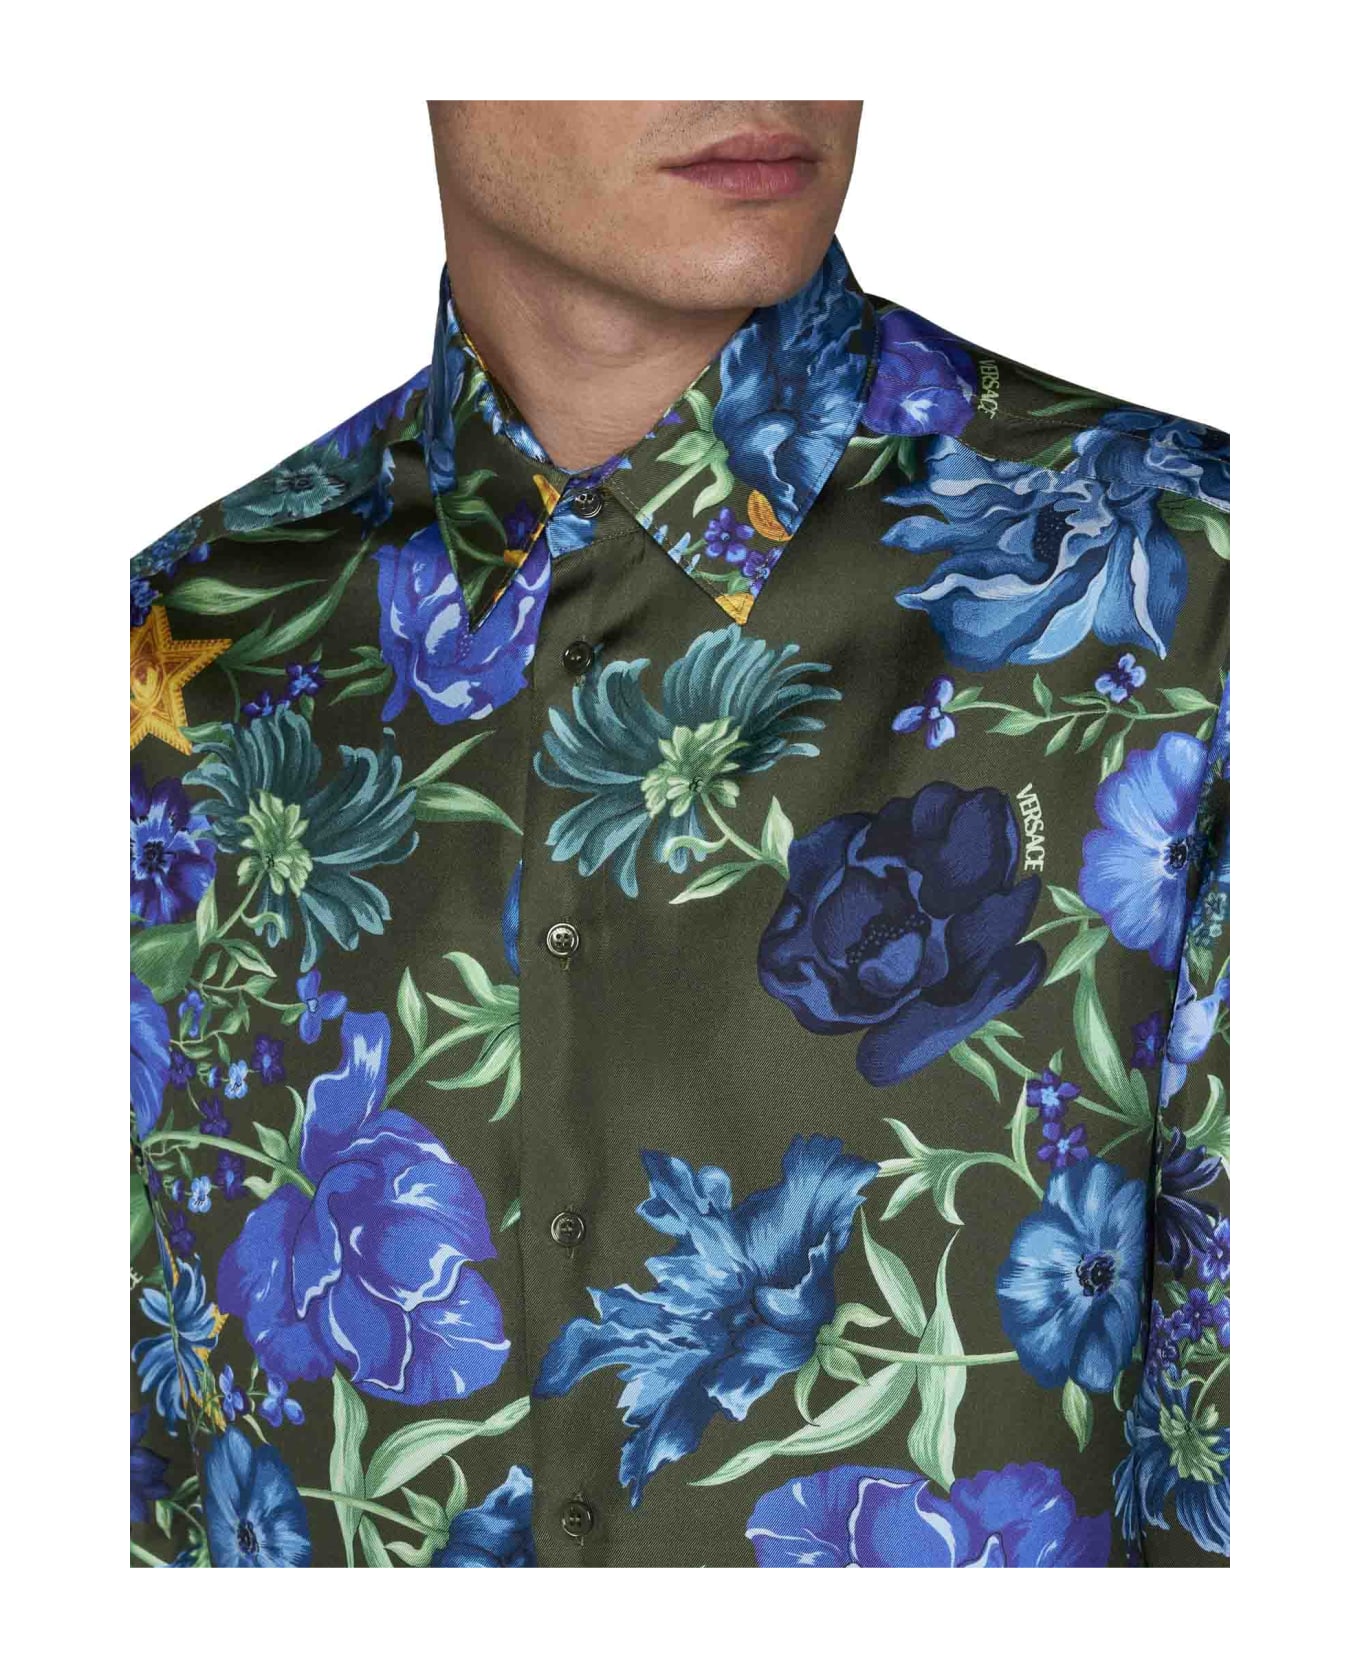 Versace Multicolor Floral Print Shirt - Khaki multicolor